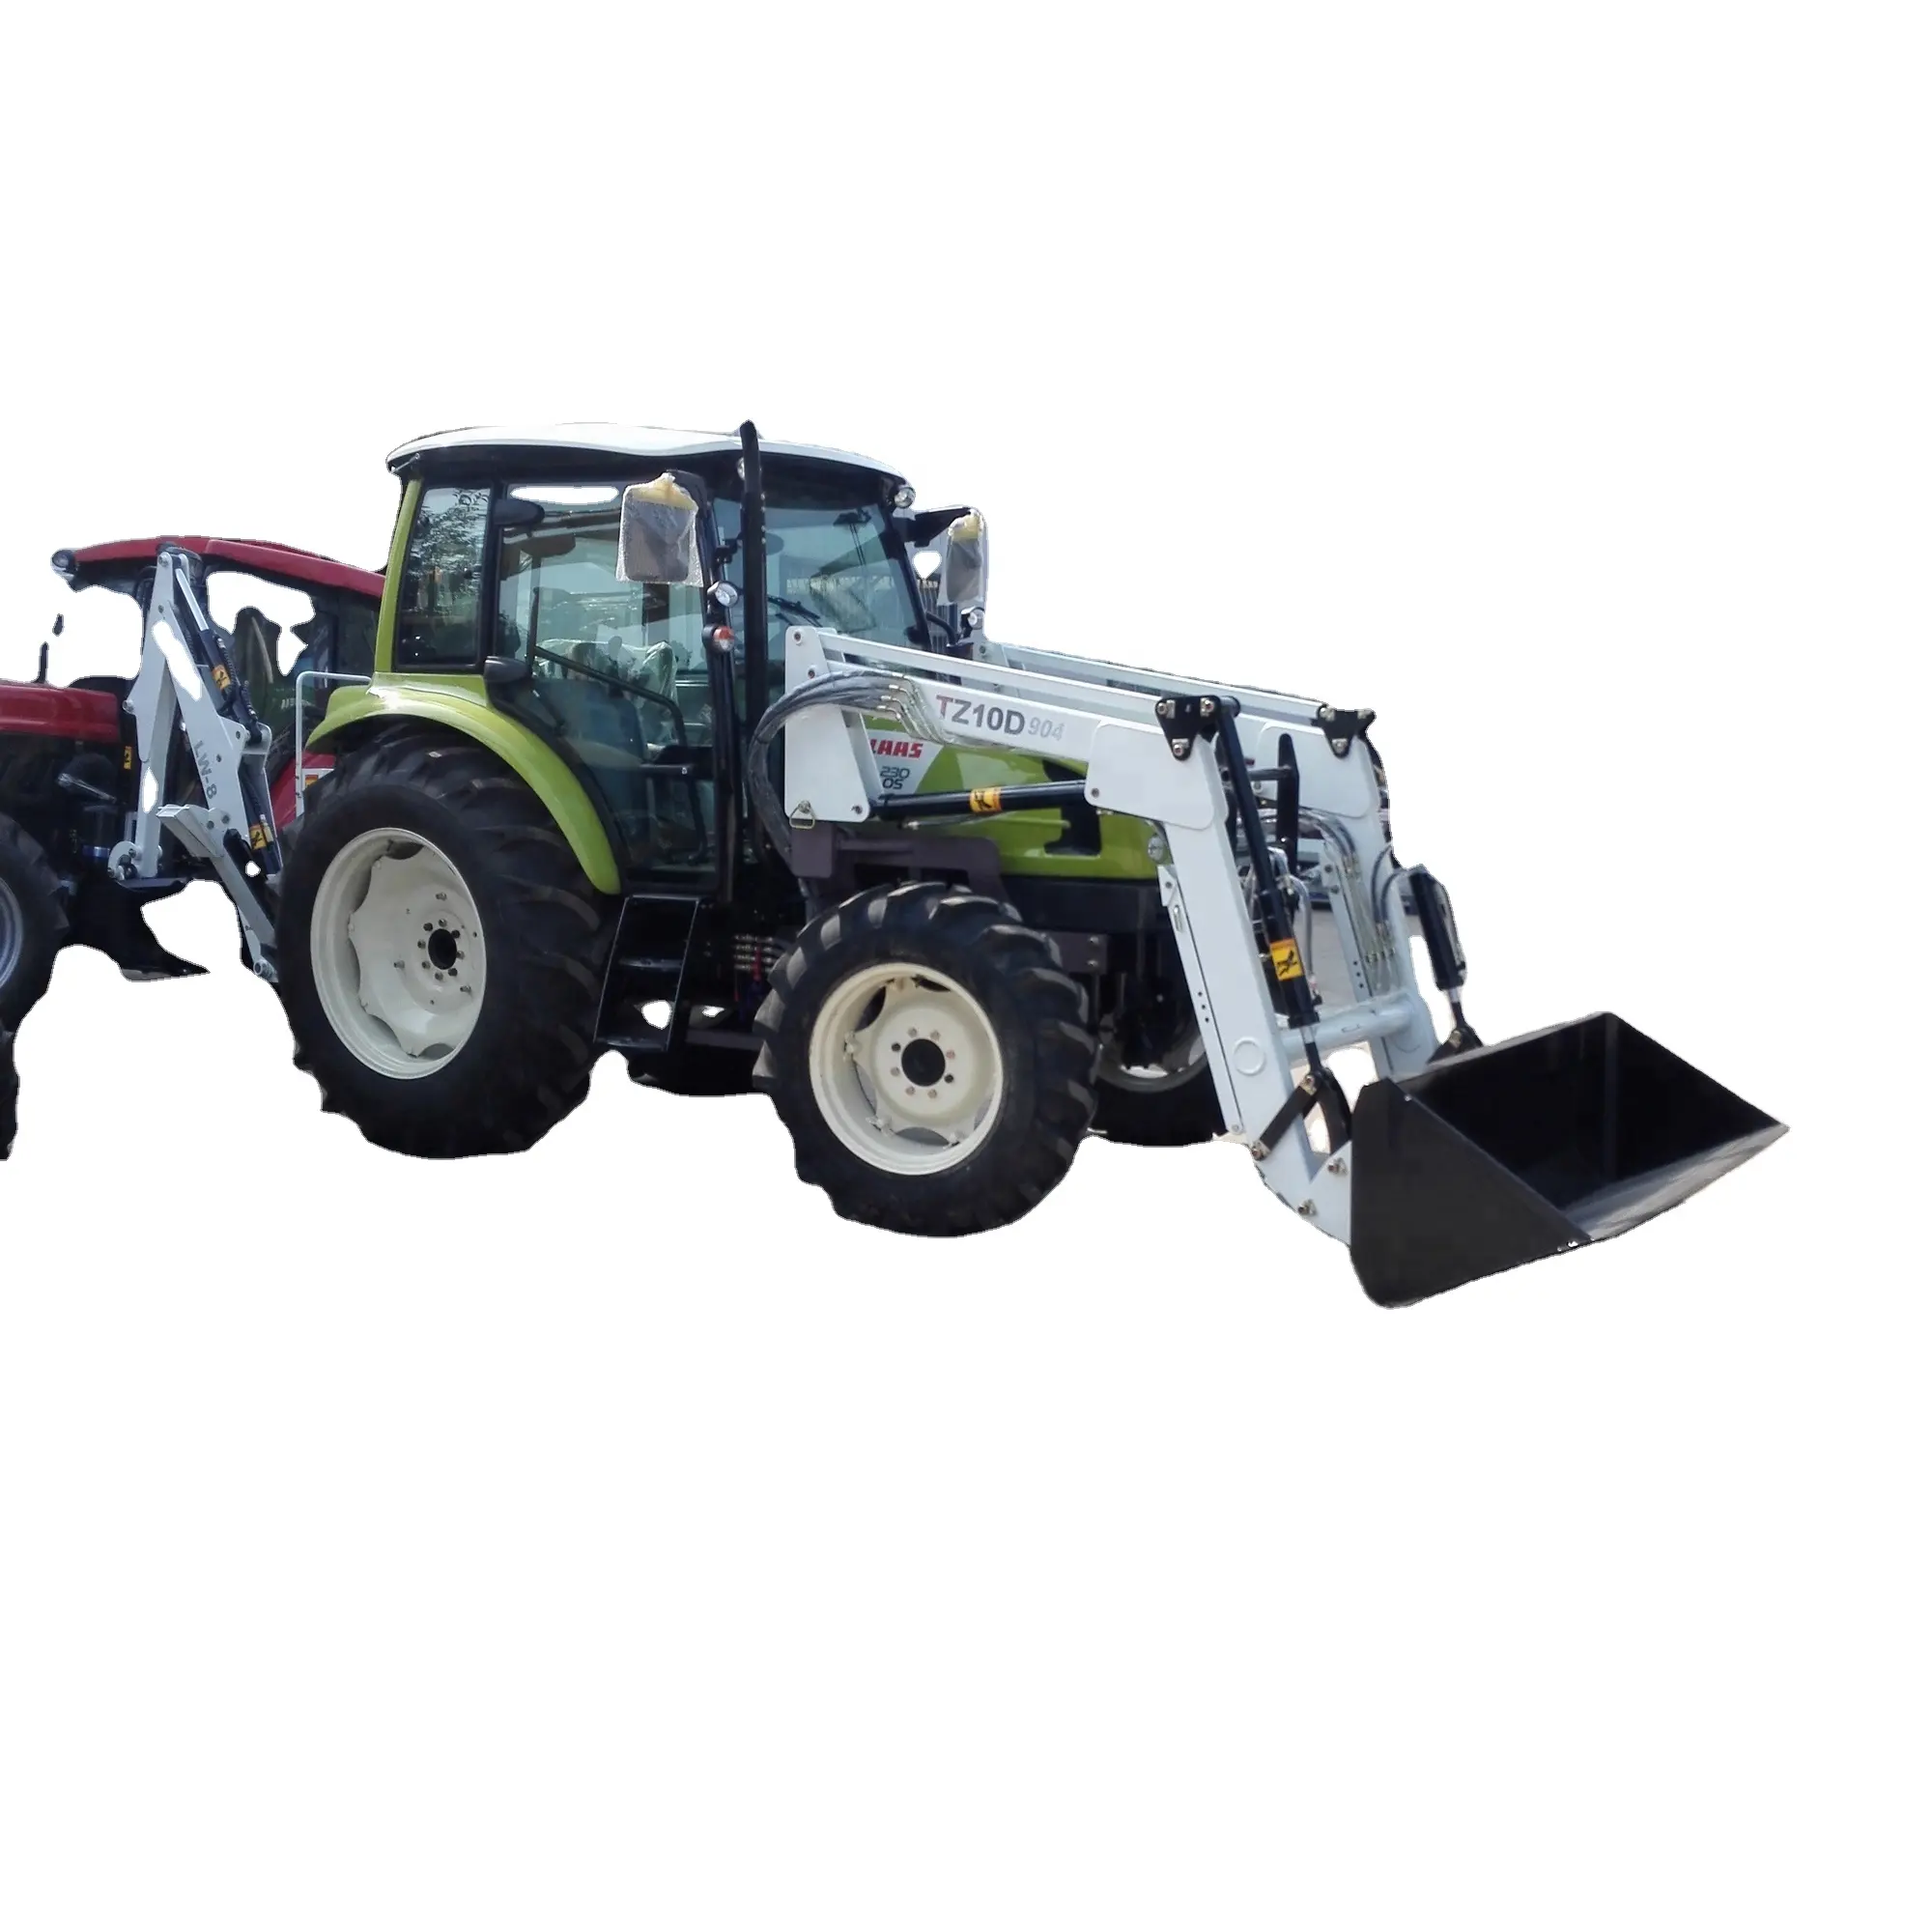 Сертификат CE, сельскохозяйственный трактор 4WD с фронтальным погрузчиком, сельскохозяйственное оборудование